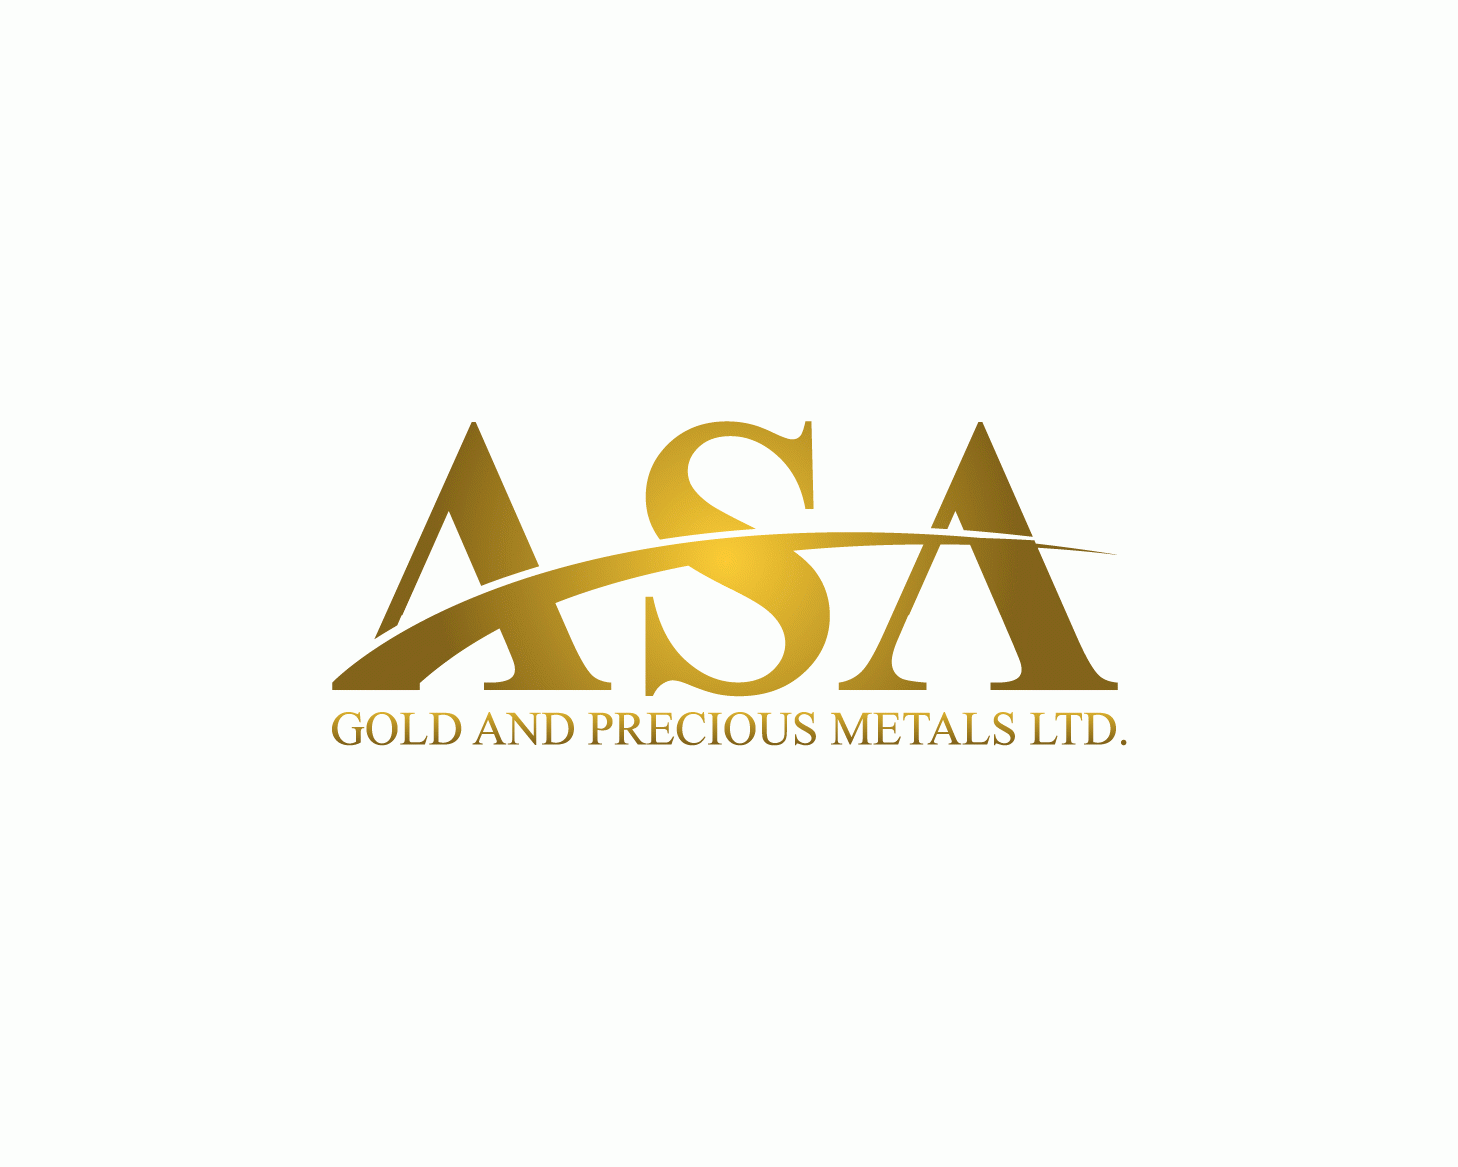 ASA Gold & Precious Metals Ltd.